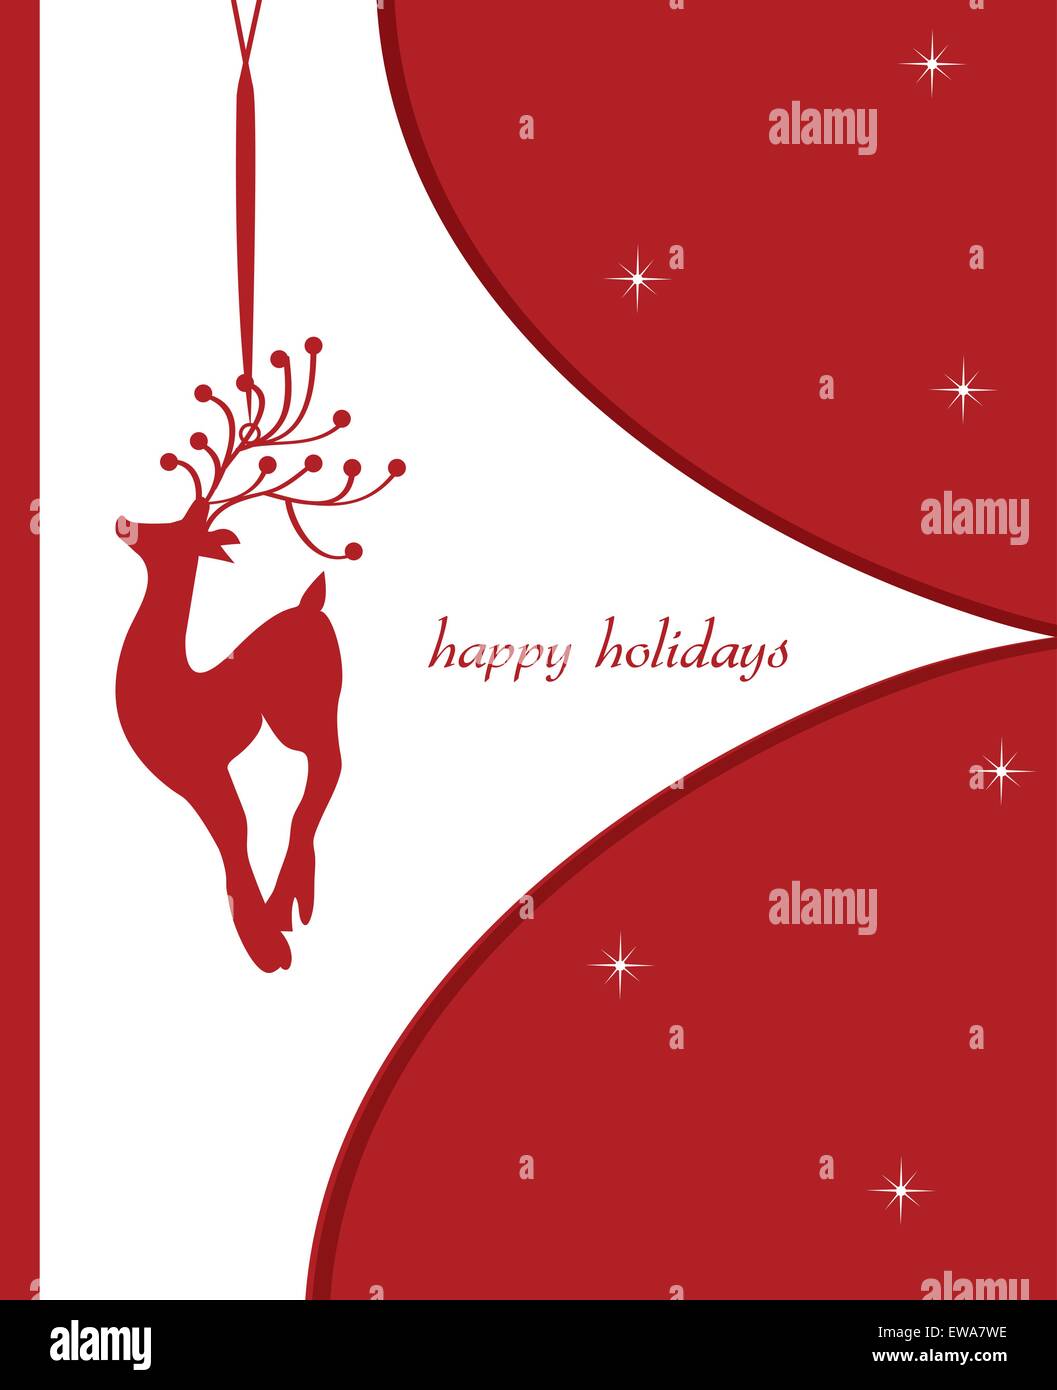 Vintage Weihnachtskarte mit reich verzierten elegante Retro-abstrakte Design, rote Rentier auf weißen und roten Hintergrund mit Sternen und Beschriftung. Vektor-Illustration. Stock Vektor